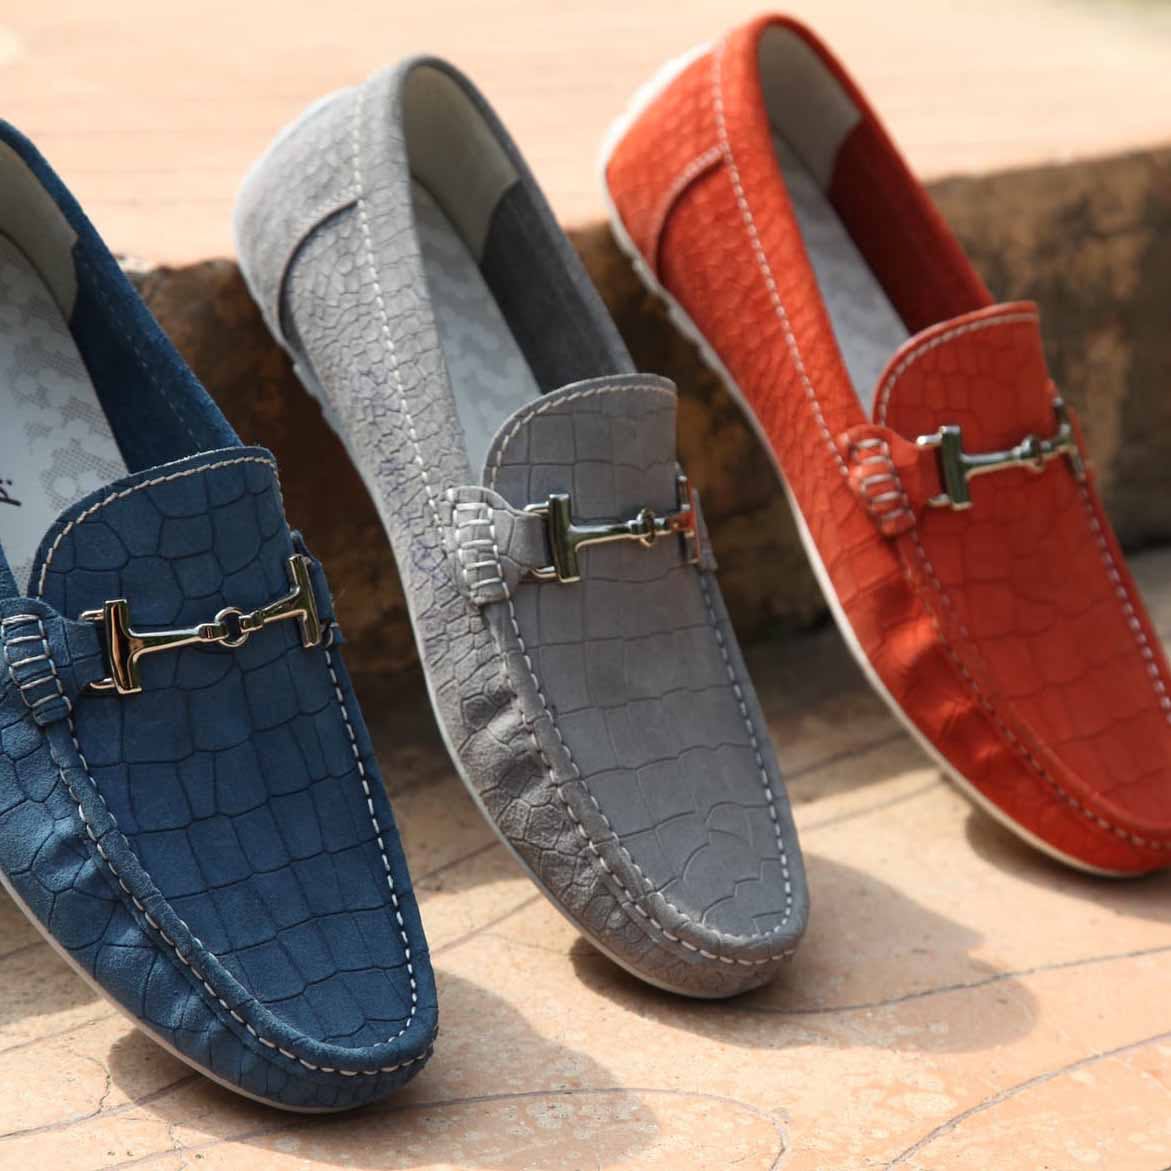 Footwear,Shoe,Slipper,Suede,Font,Leather,Brand,Plimsoll shoe